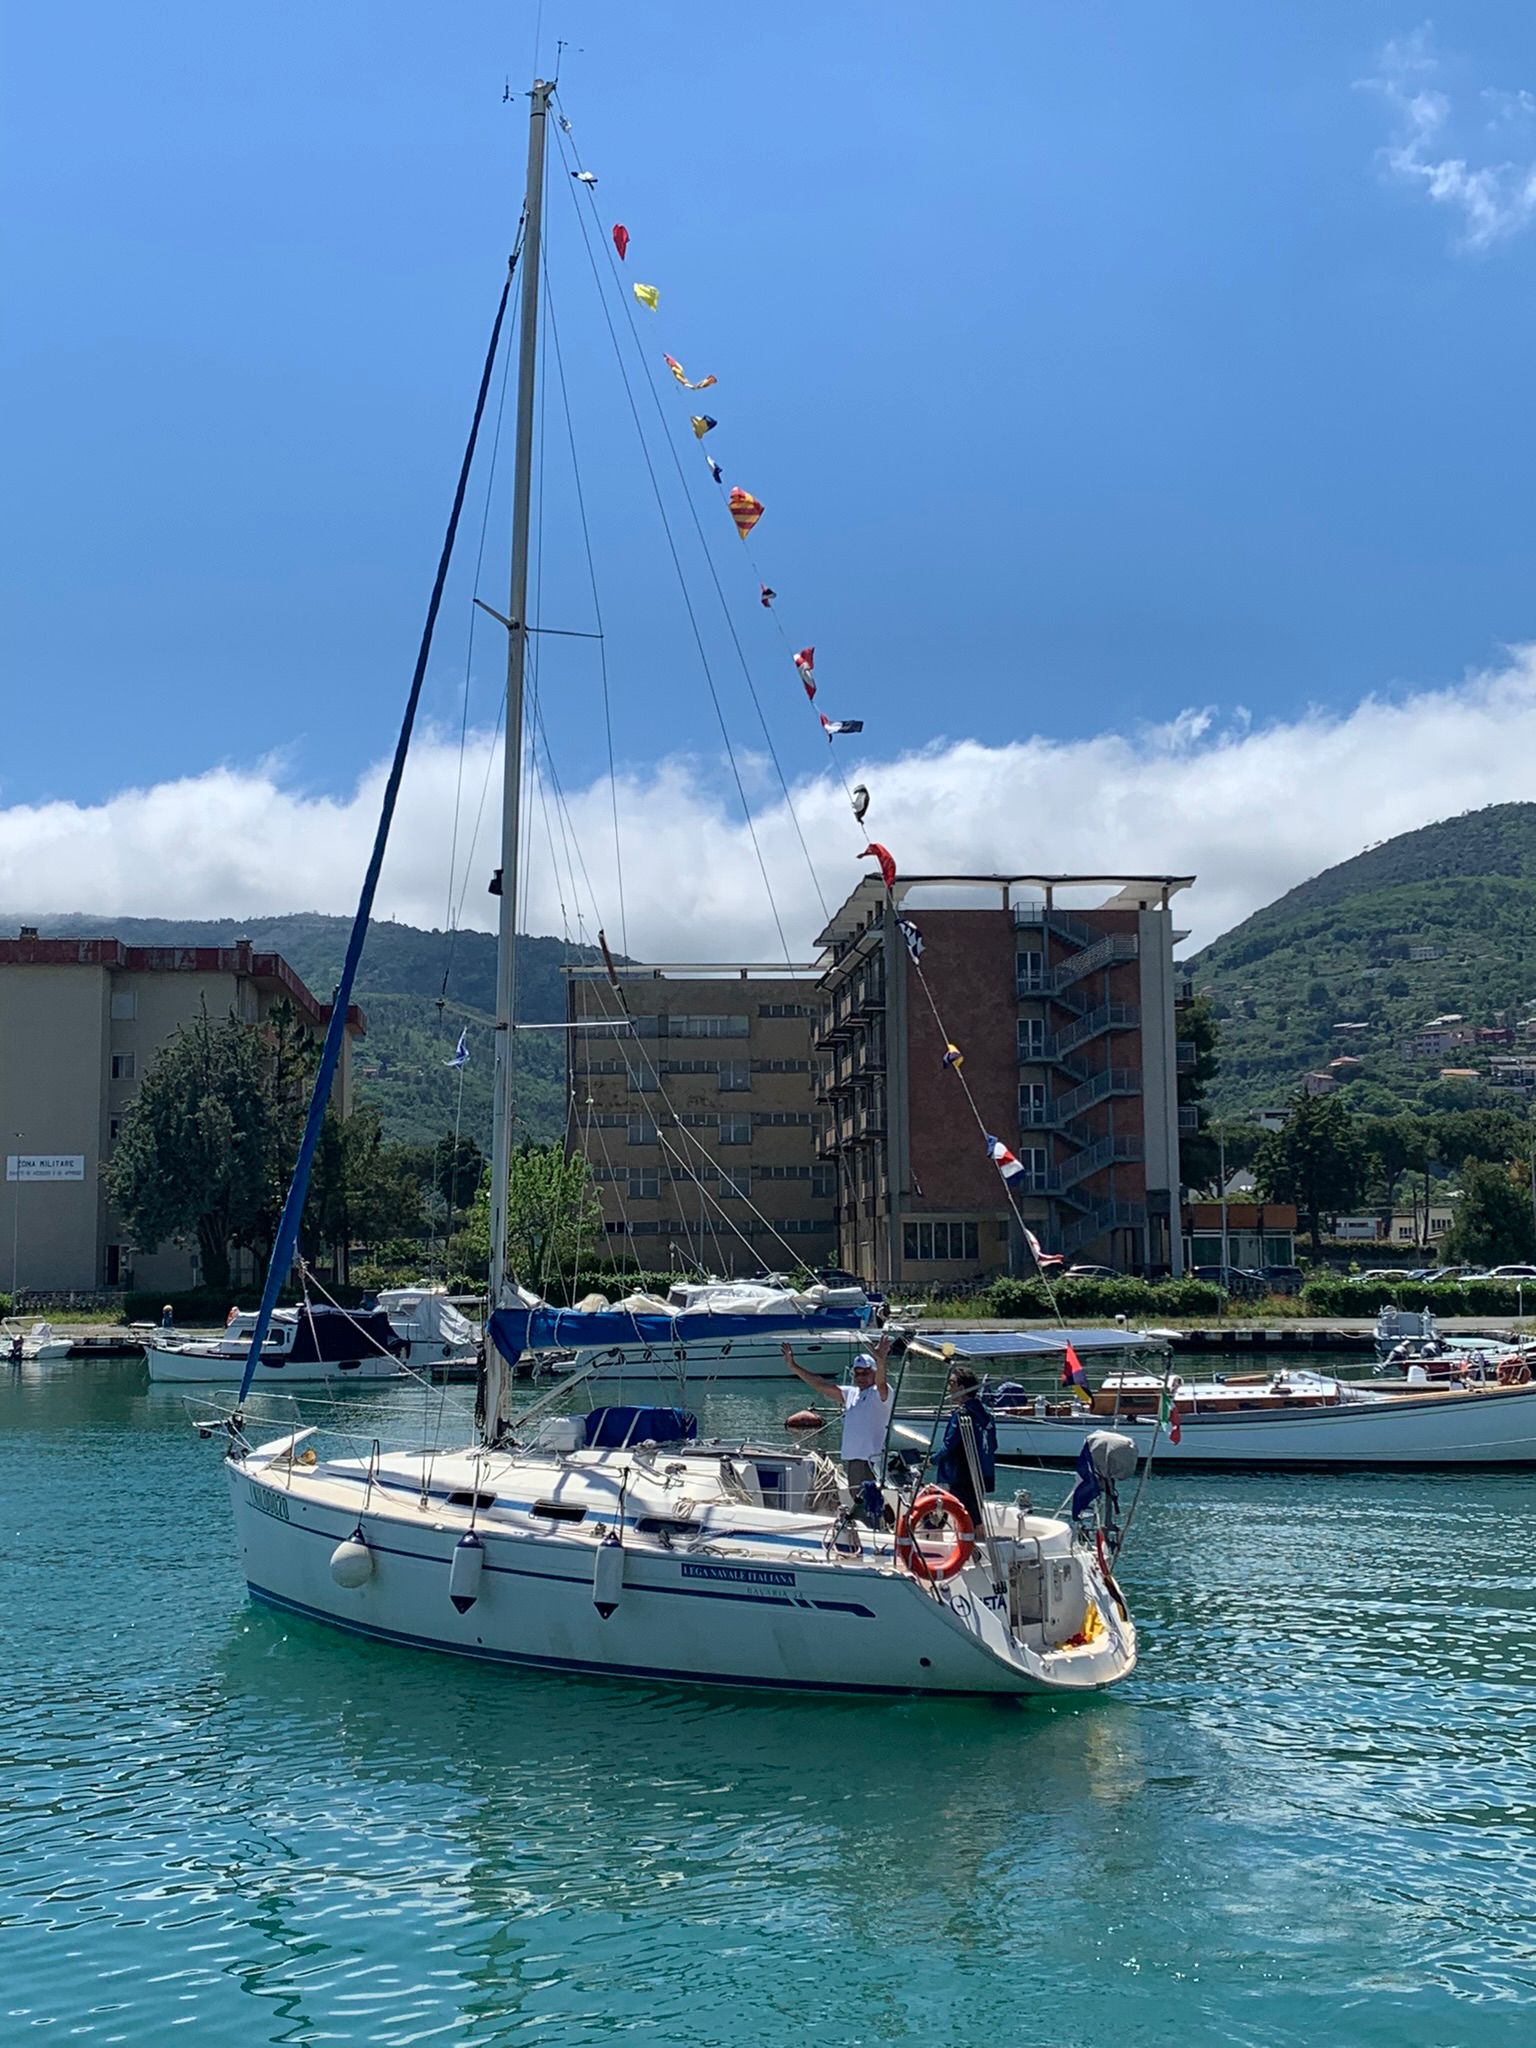 Teta, la prima tra le barche utilizzate nel progetto LIFE A-MAR NATURA2000, prende il largo per raggiungere i siti marini della Liguria